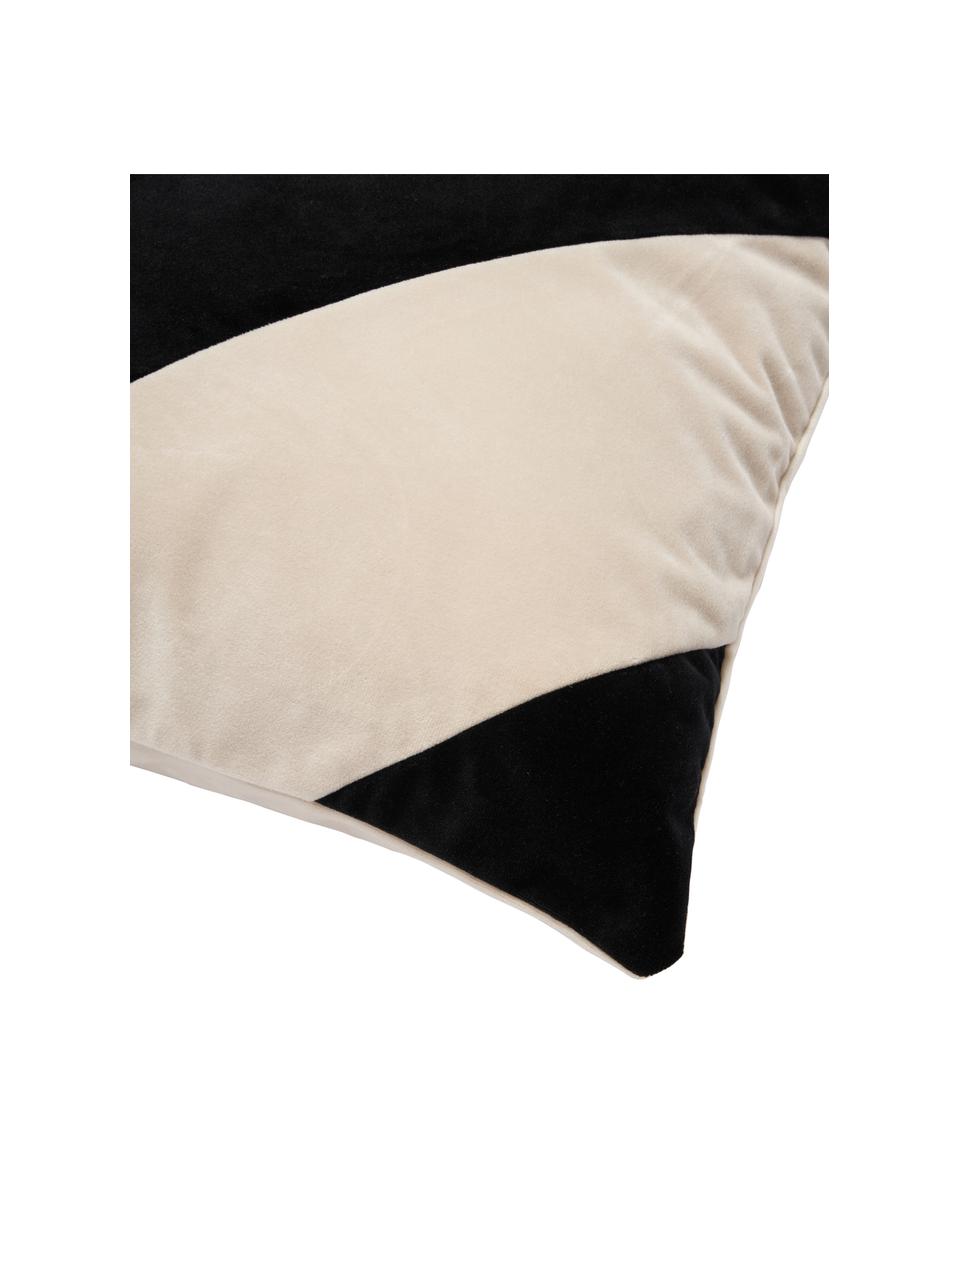 Fluwelen kussenhoes Lenia in beige/zwart, 100% polyester fluweel, Beige, zwart, B 45 x L 45 cm